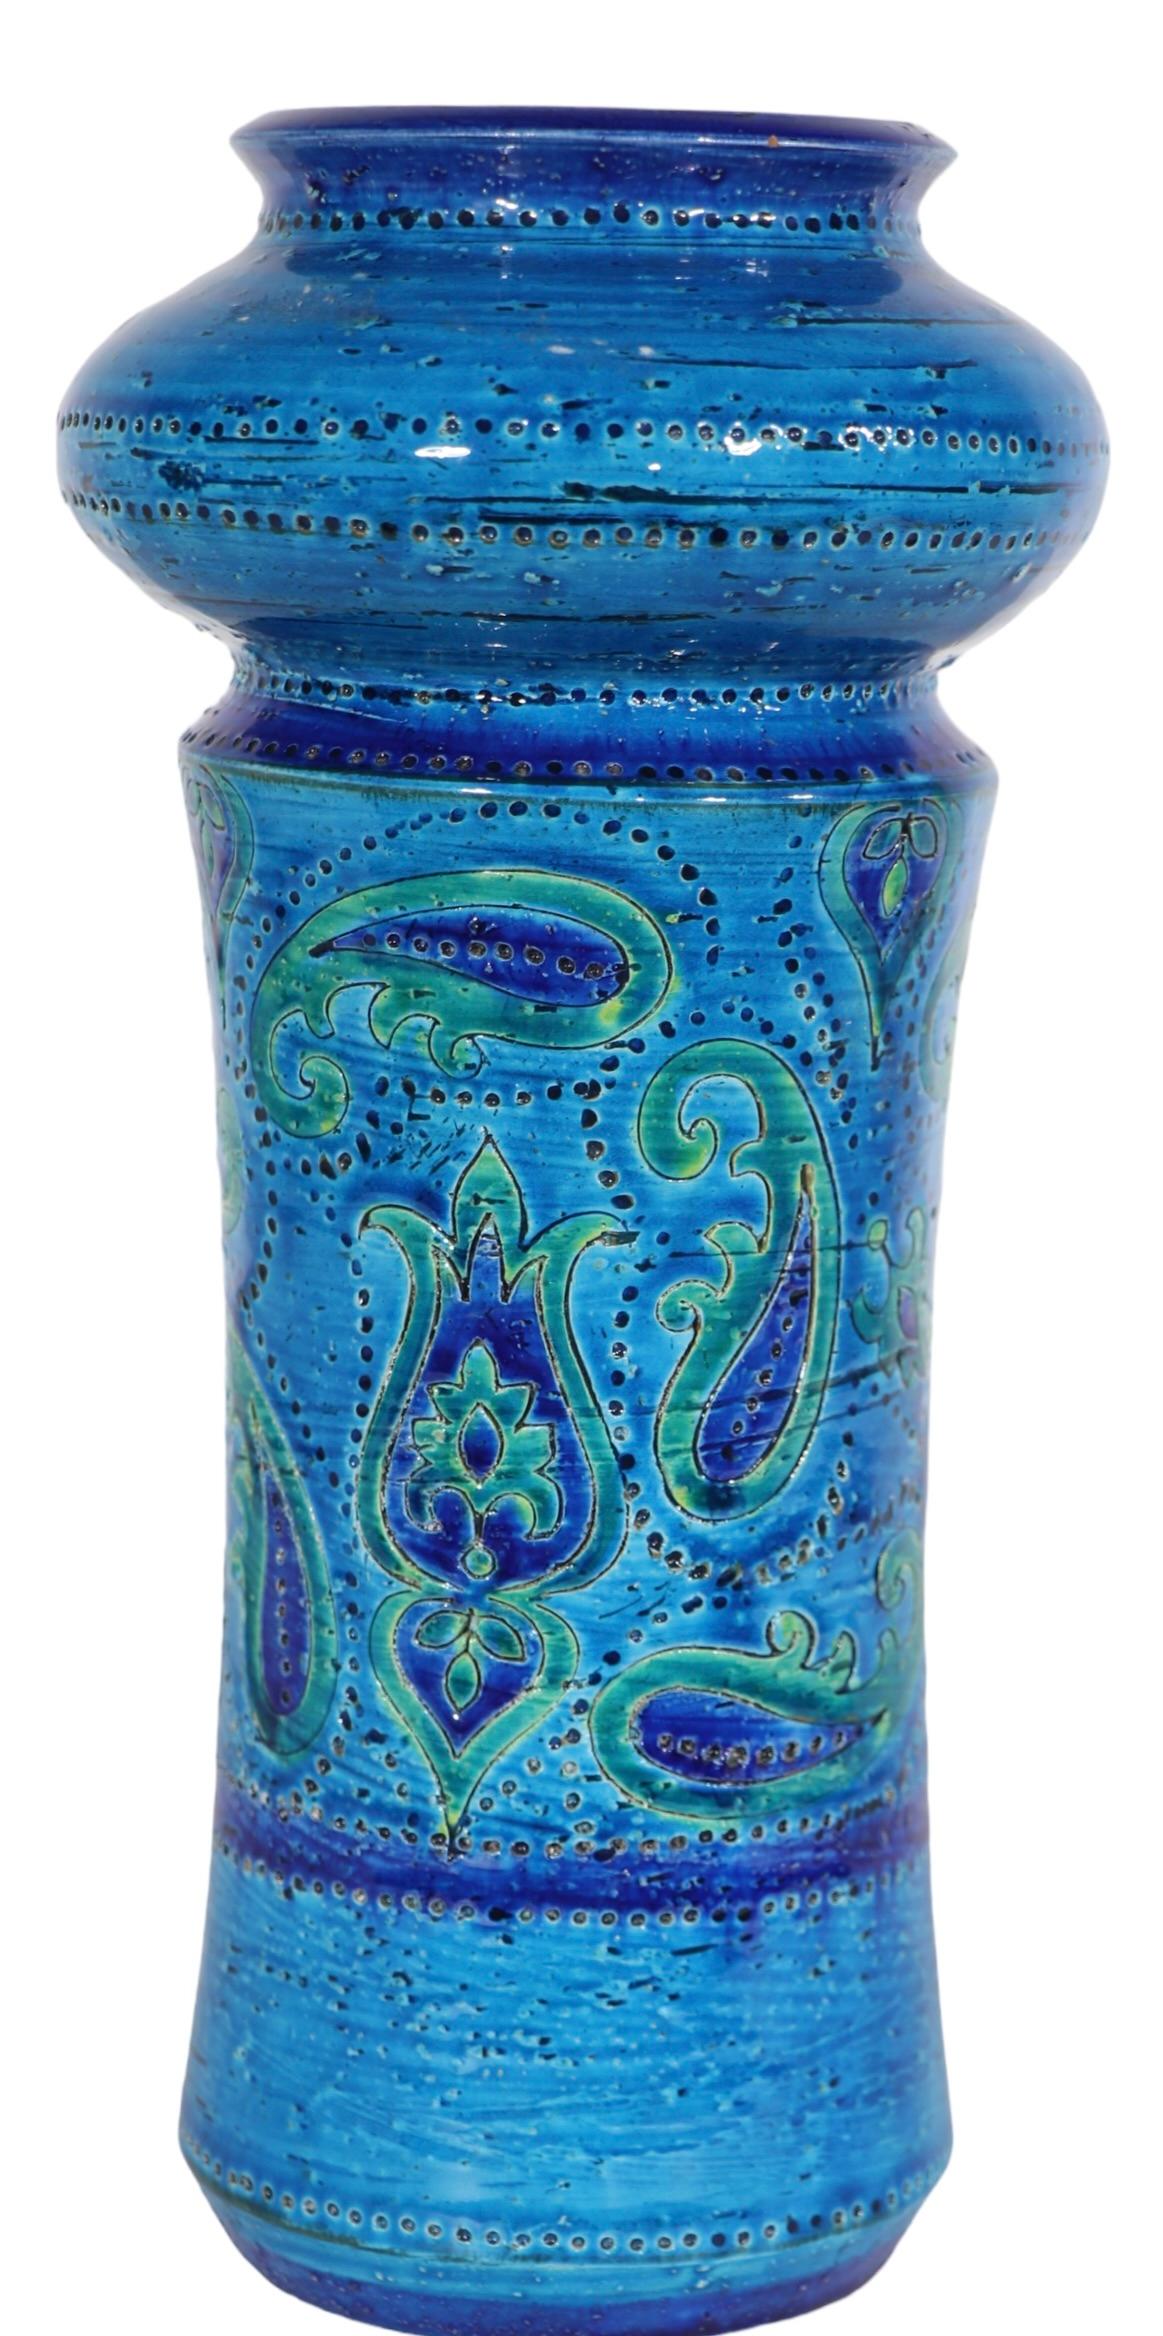 Klassische Mid Century italienischen Keramik-Vase mit eingeschnittenen Dekoration, signiert Italien nummeriert, und behält seine  Original Rosenthal Netter Papier Label. Die Vase zeigt die klassische blaue und grüne Glasur von Rimini mit dekorativen